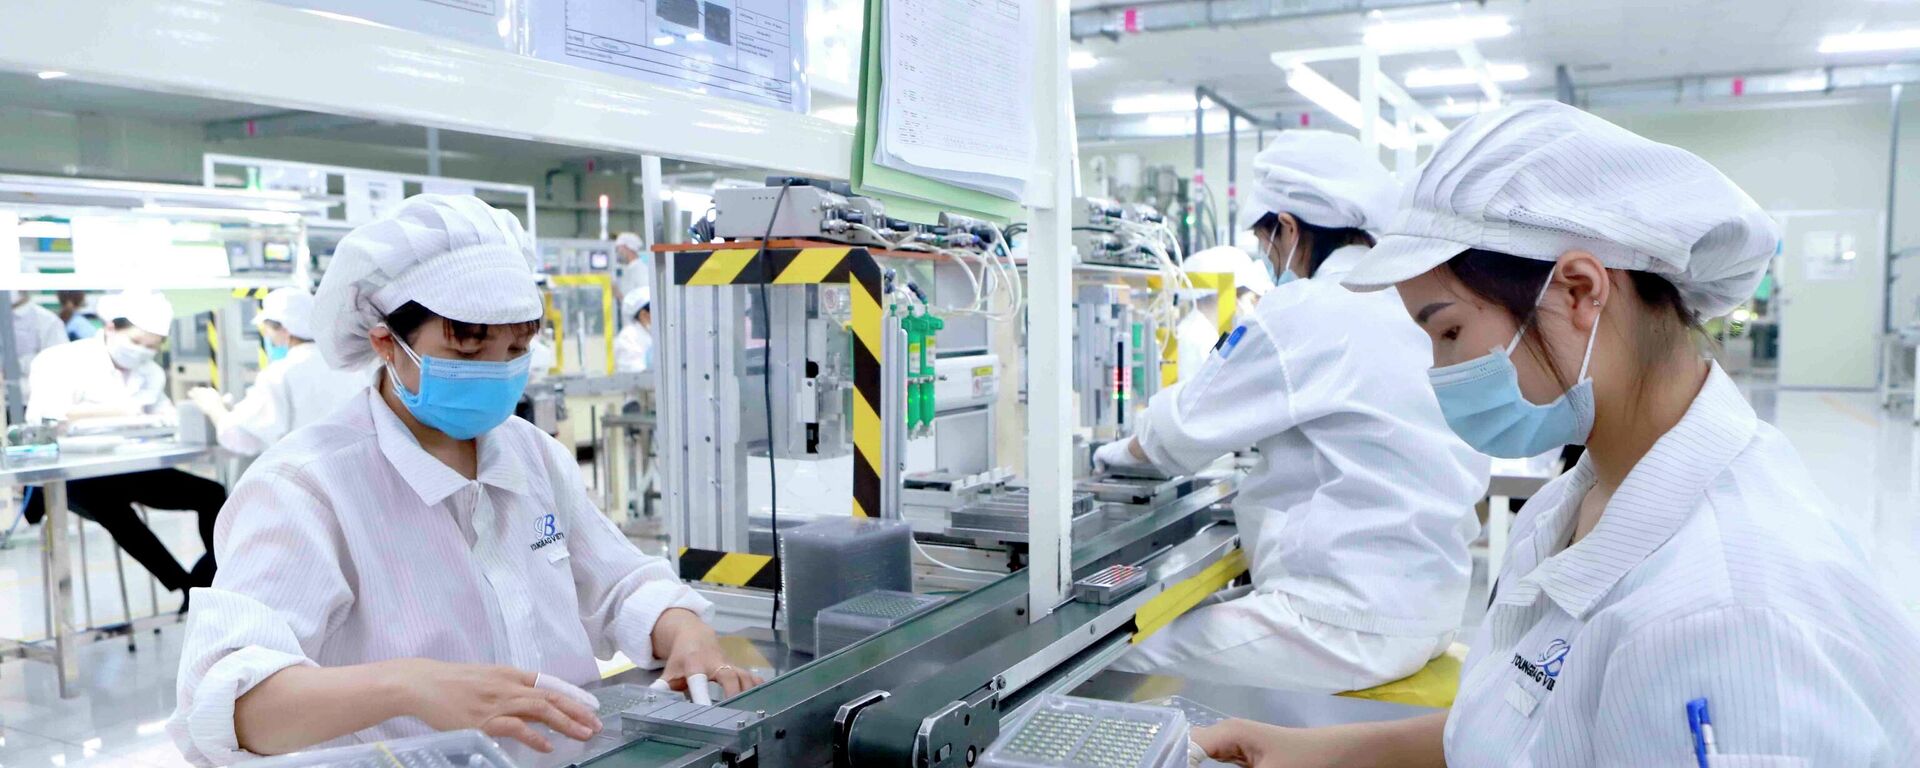 Sản xuất linh kiện điện tử tại Công ty Youngbag ViiNa khu Công nghiệp Bình Xuyên, Vĩnh Phúc. - Sputnik Việt Nam, 1920, 08.10.2021